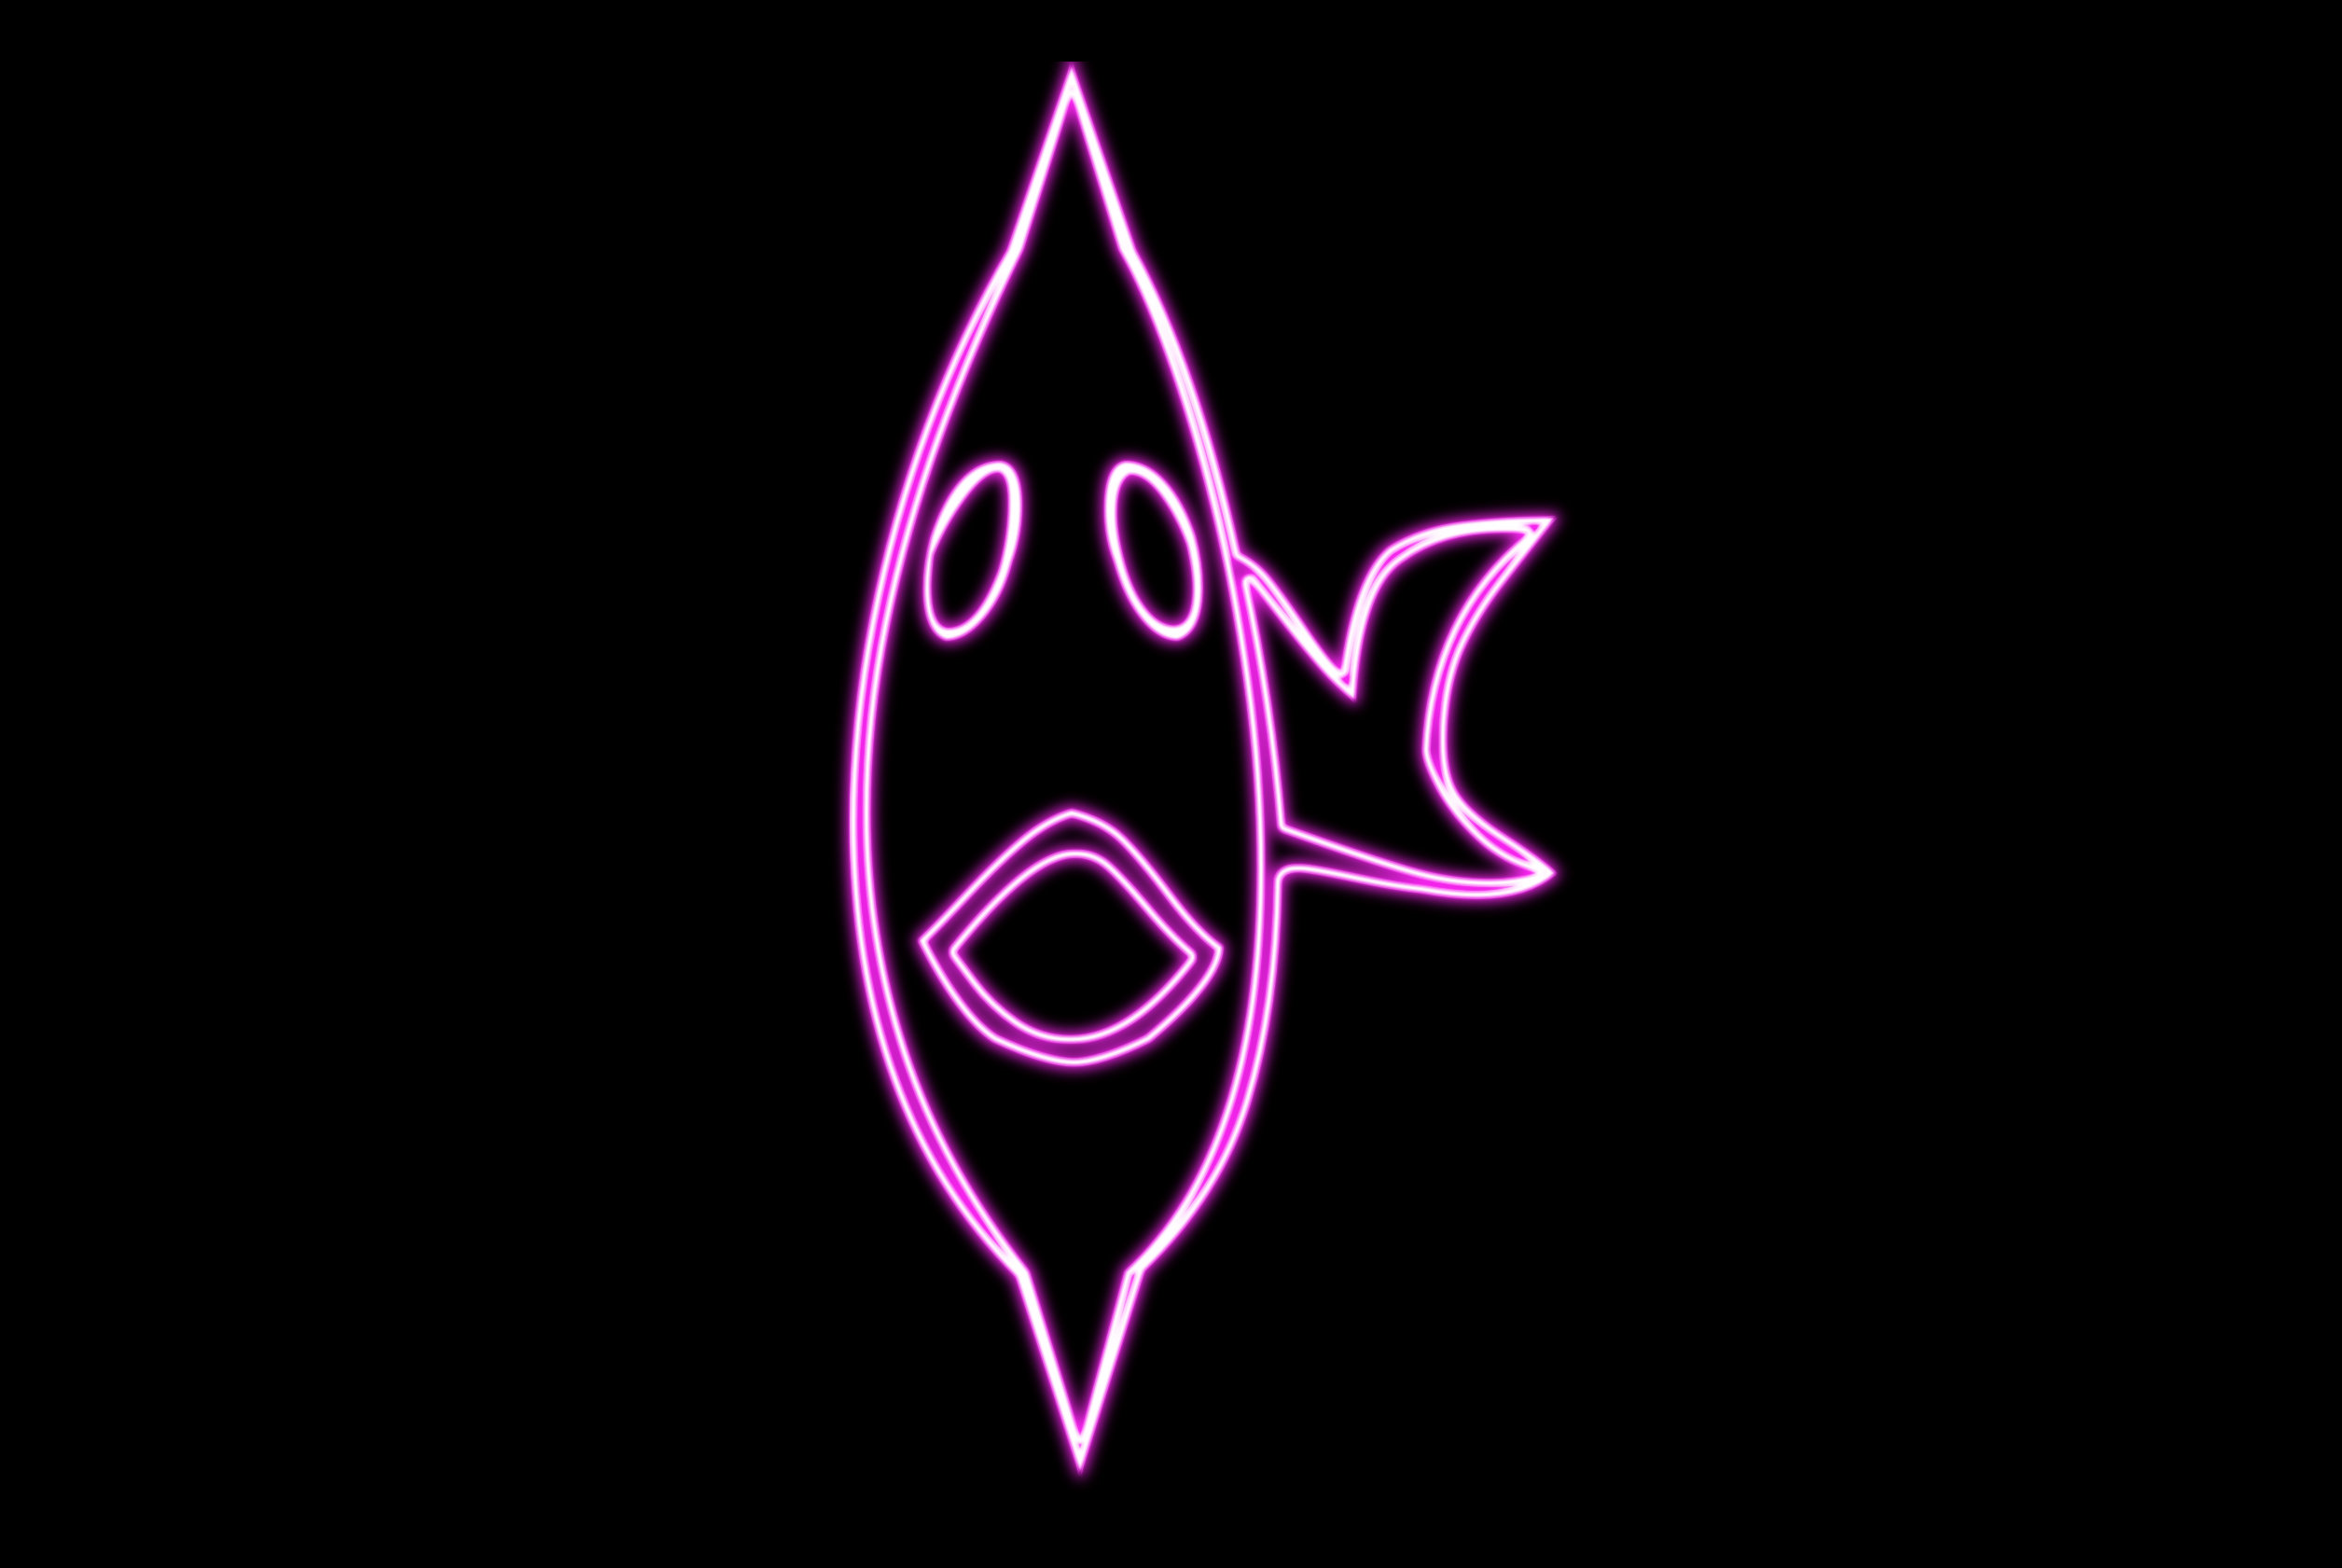 Неоновые логотипы и иконки, аватарки и картинки для скачивания - посмотреть и скачать бесплатно более 10000 файлов:животные, рыбы, предметы оригинальные и необыкновено привлекательные образы